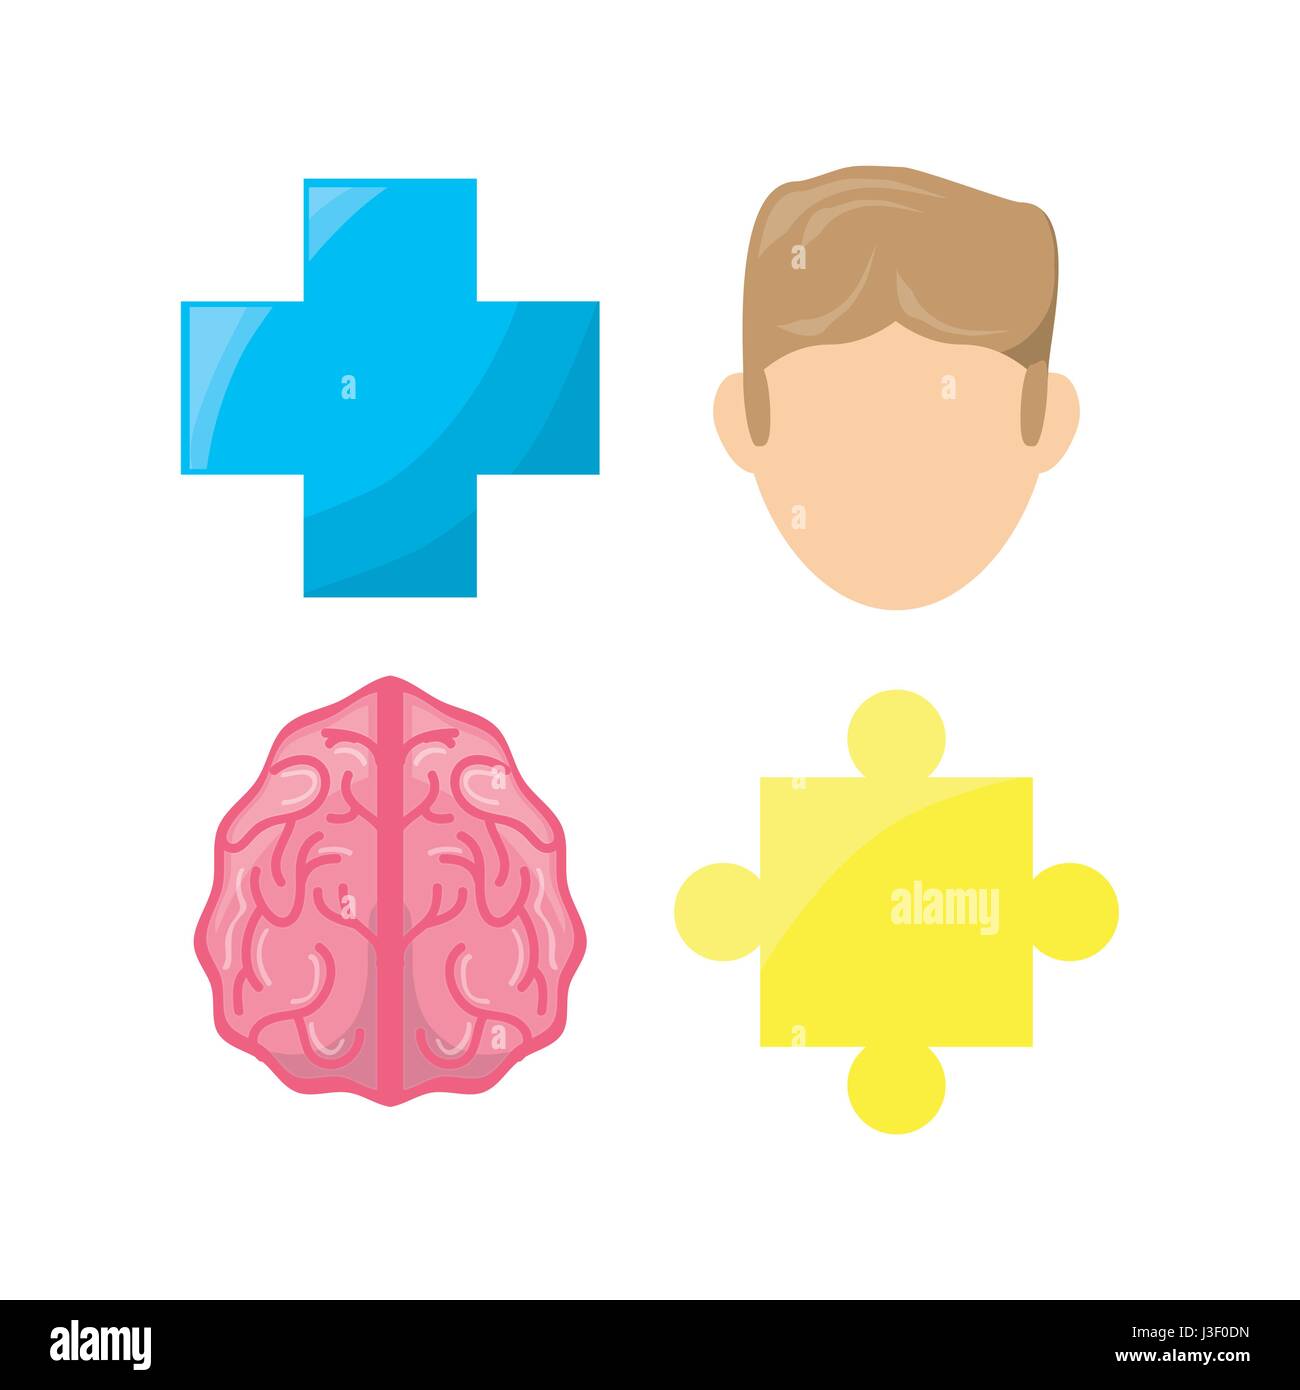 healthy mental of brain symbols Stock Vector